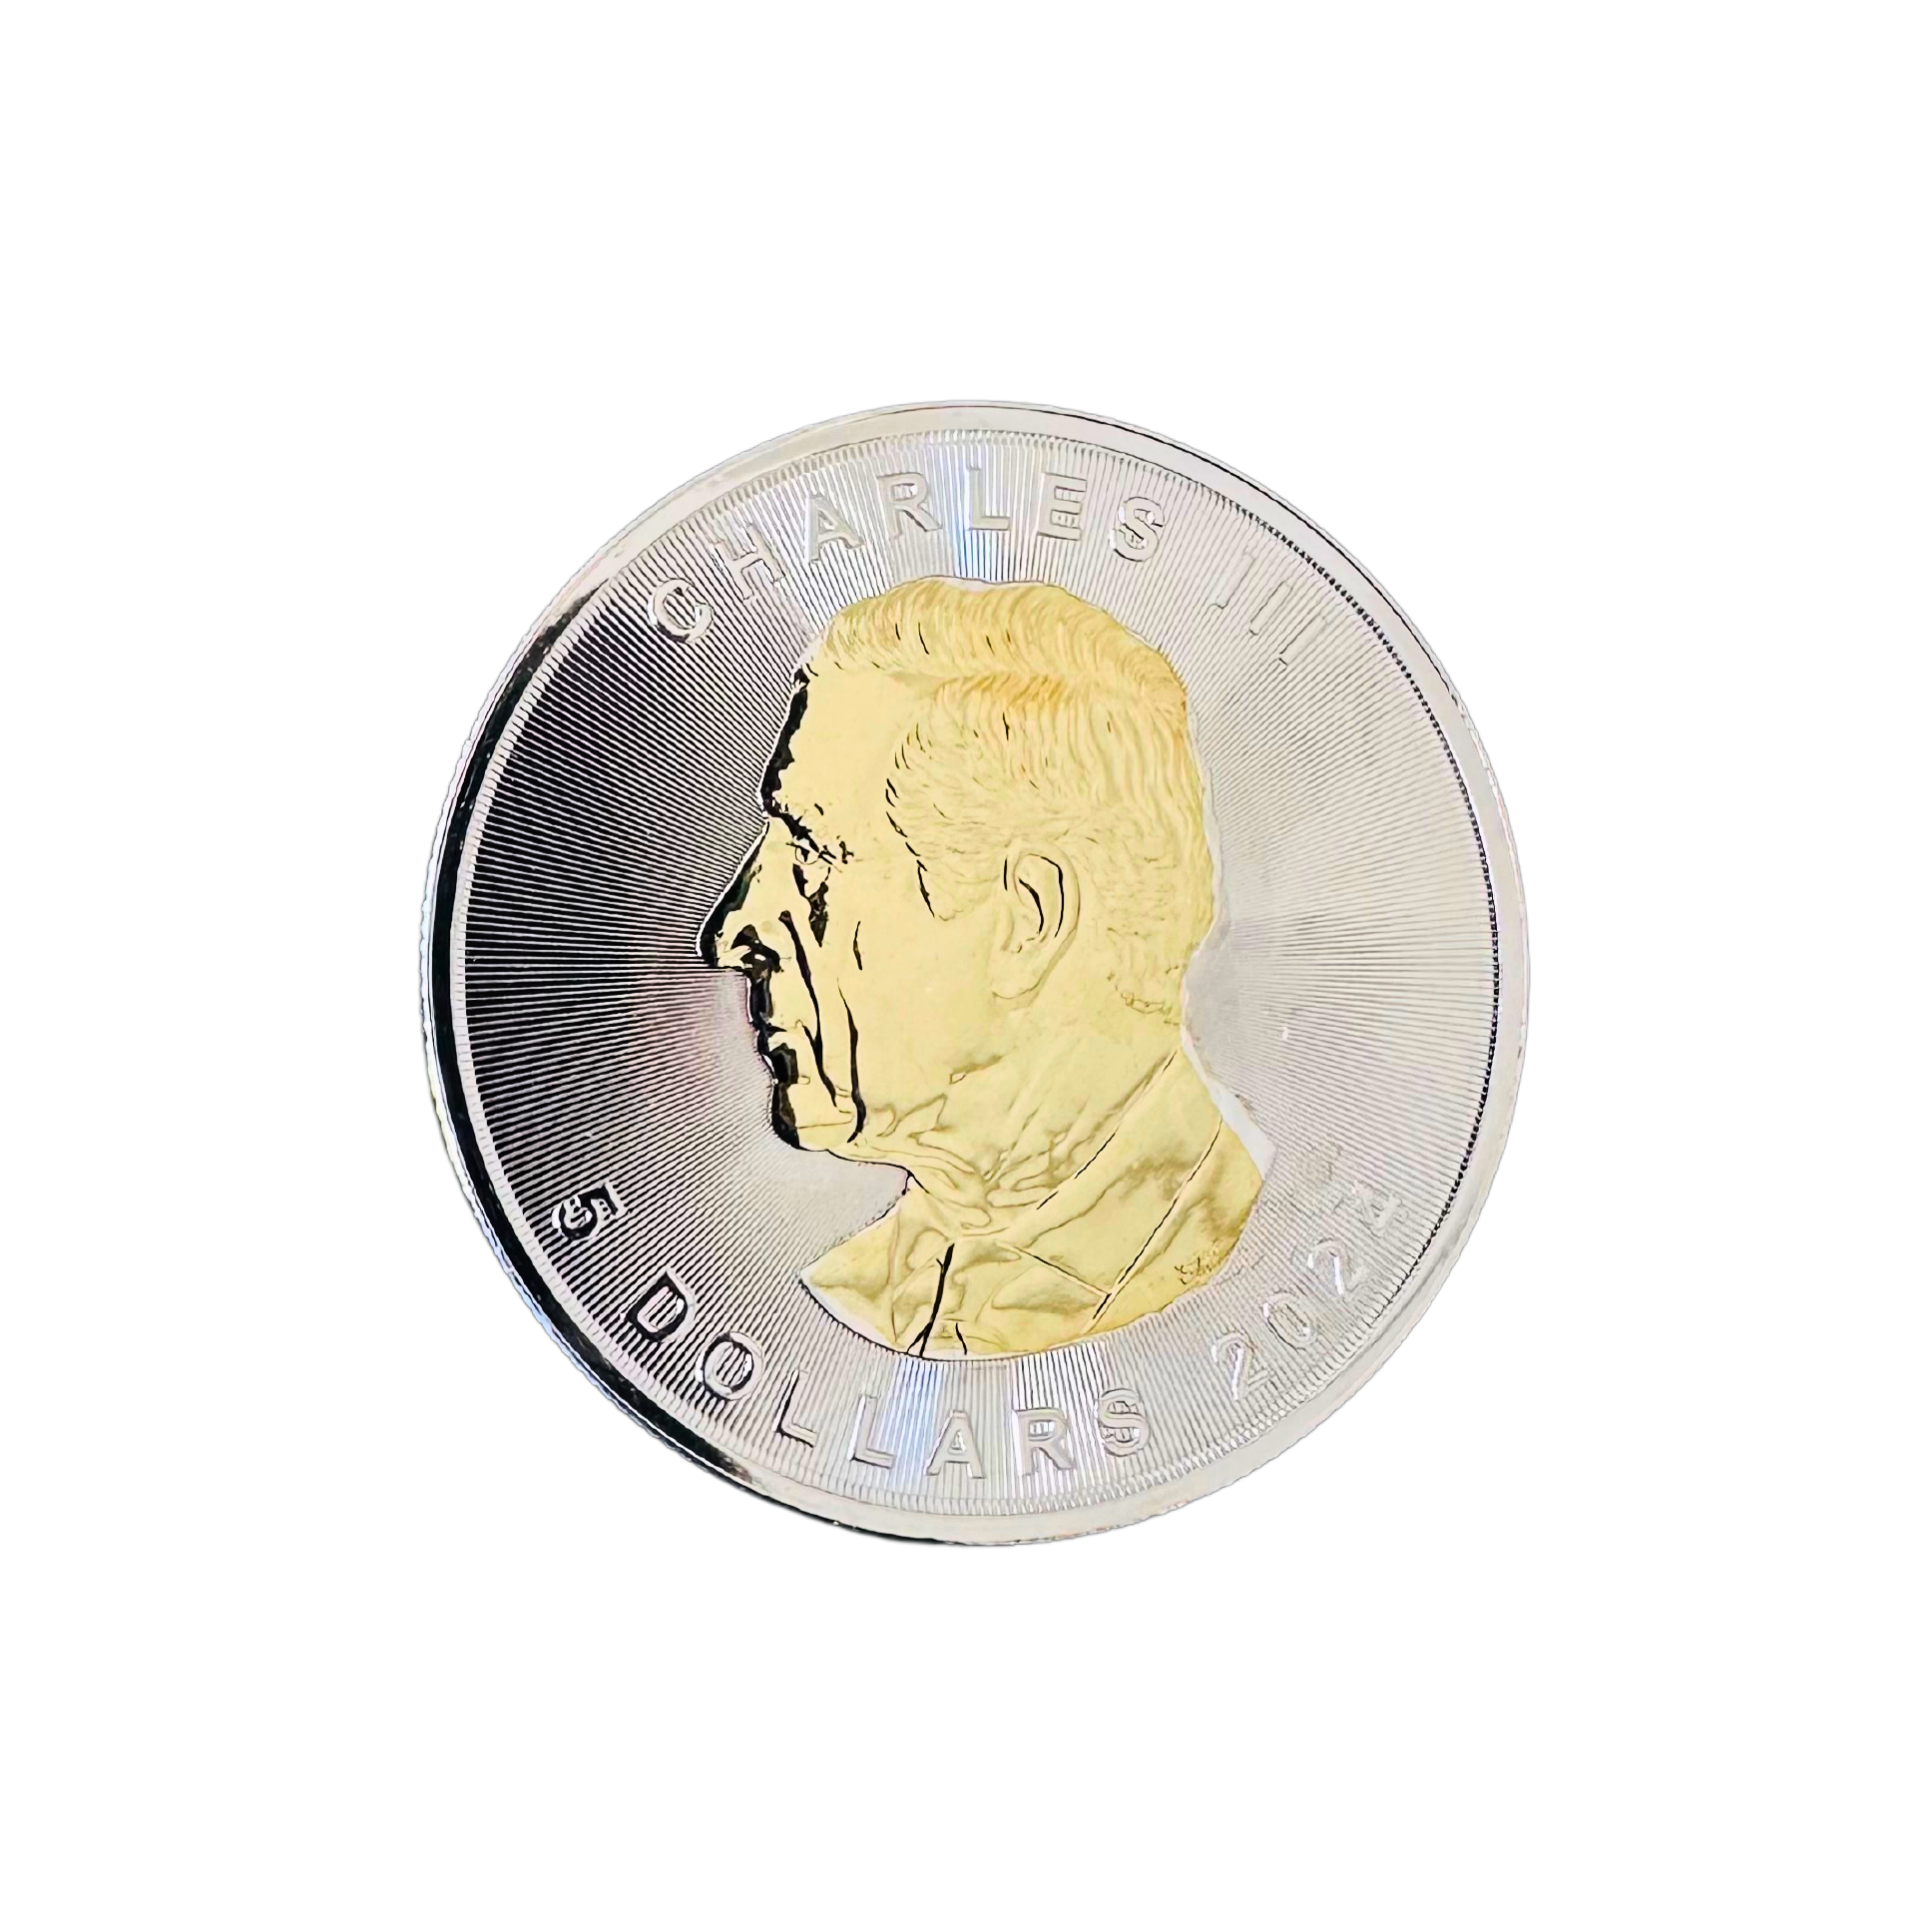 Stříbrná mince se zlatým písmenem a certifikátem 1 oz Maple Leaf